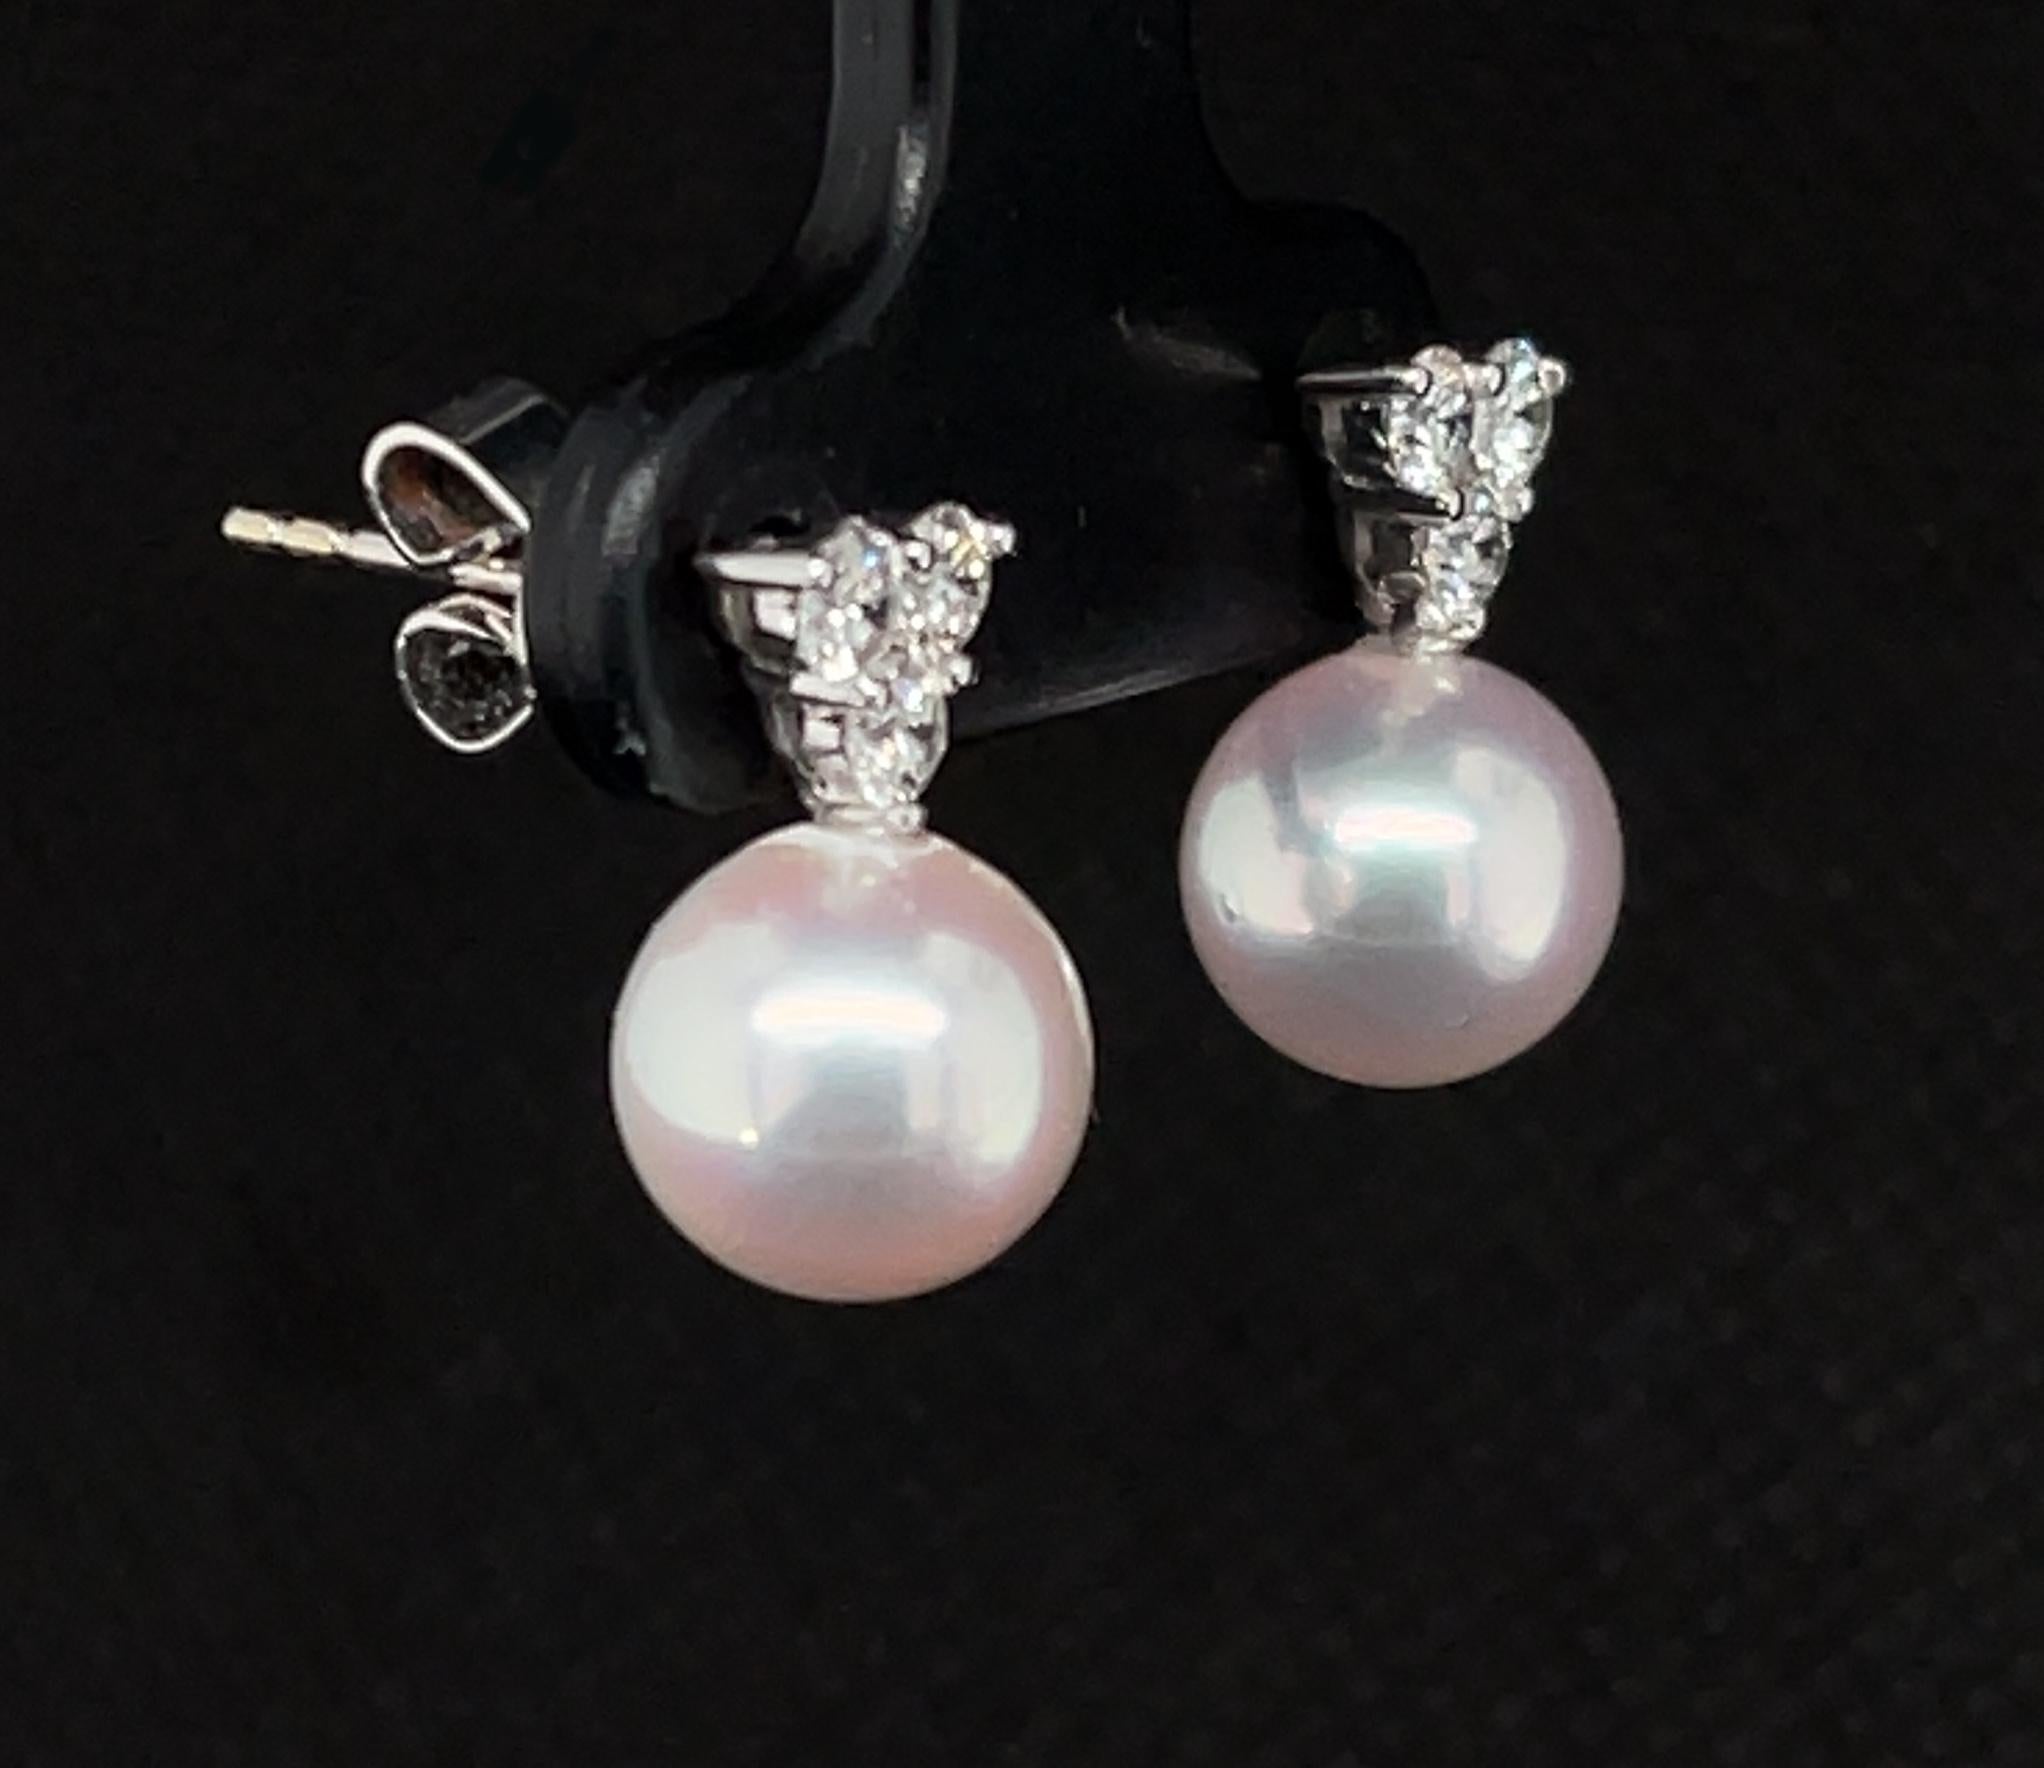 8mm diamond earrings